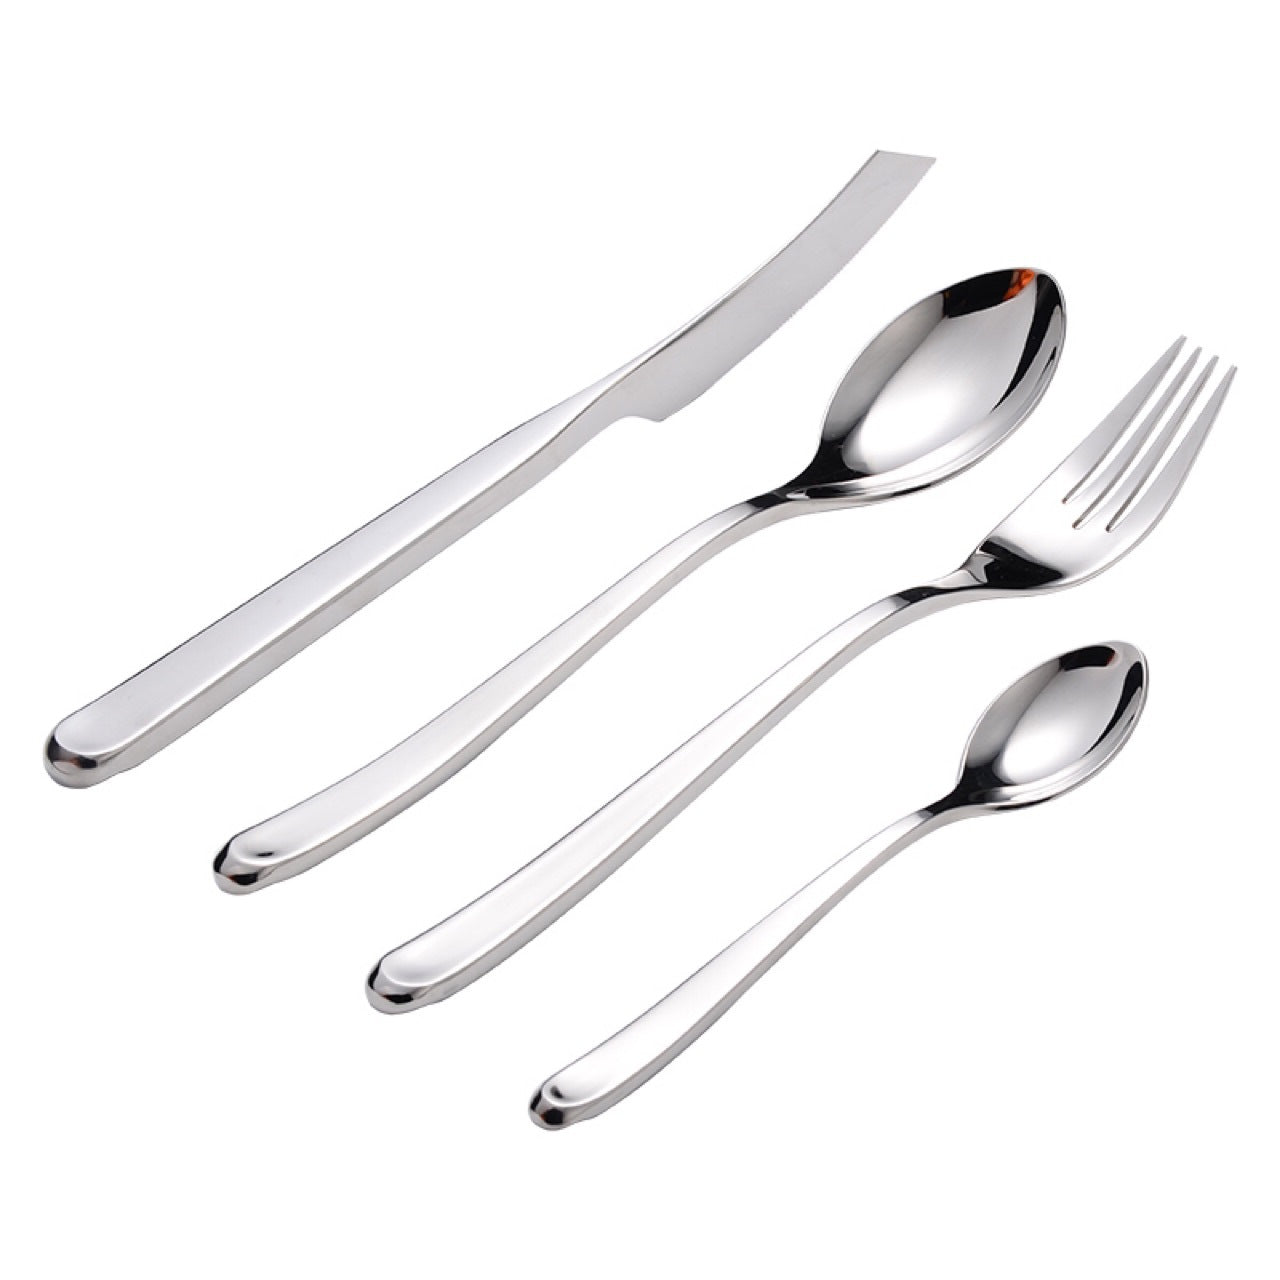 Ritz Silver Luxury Cutlery Set